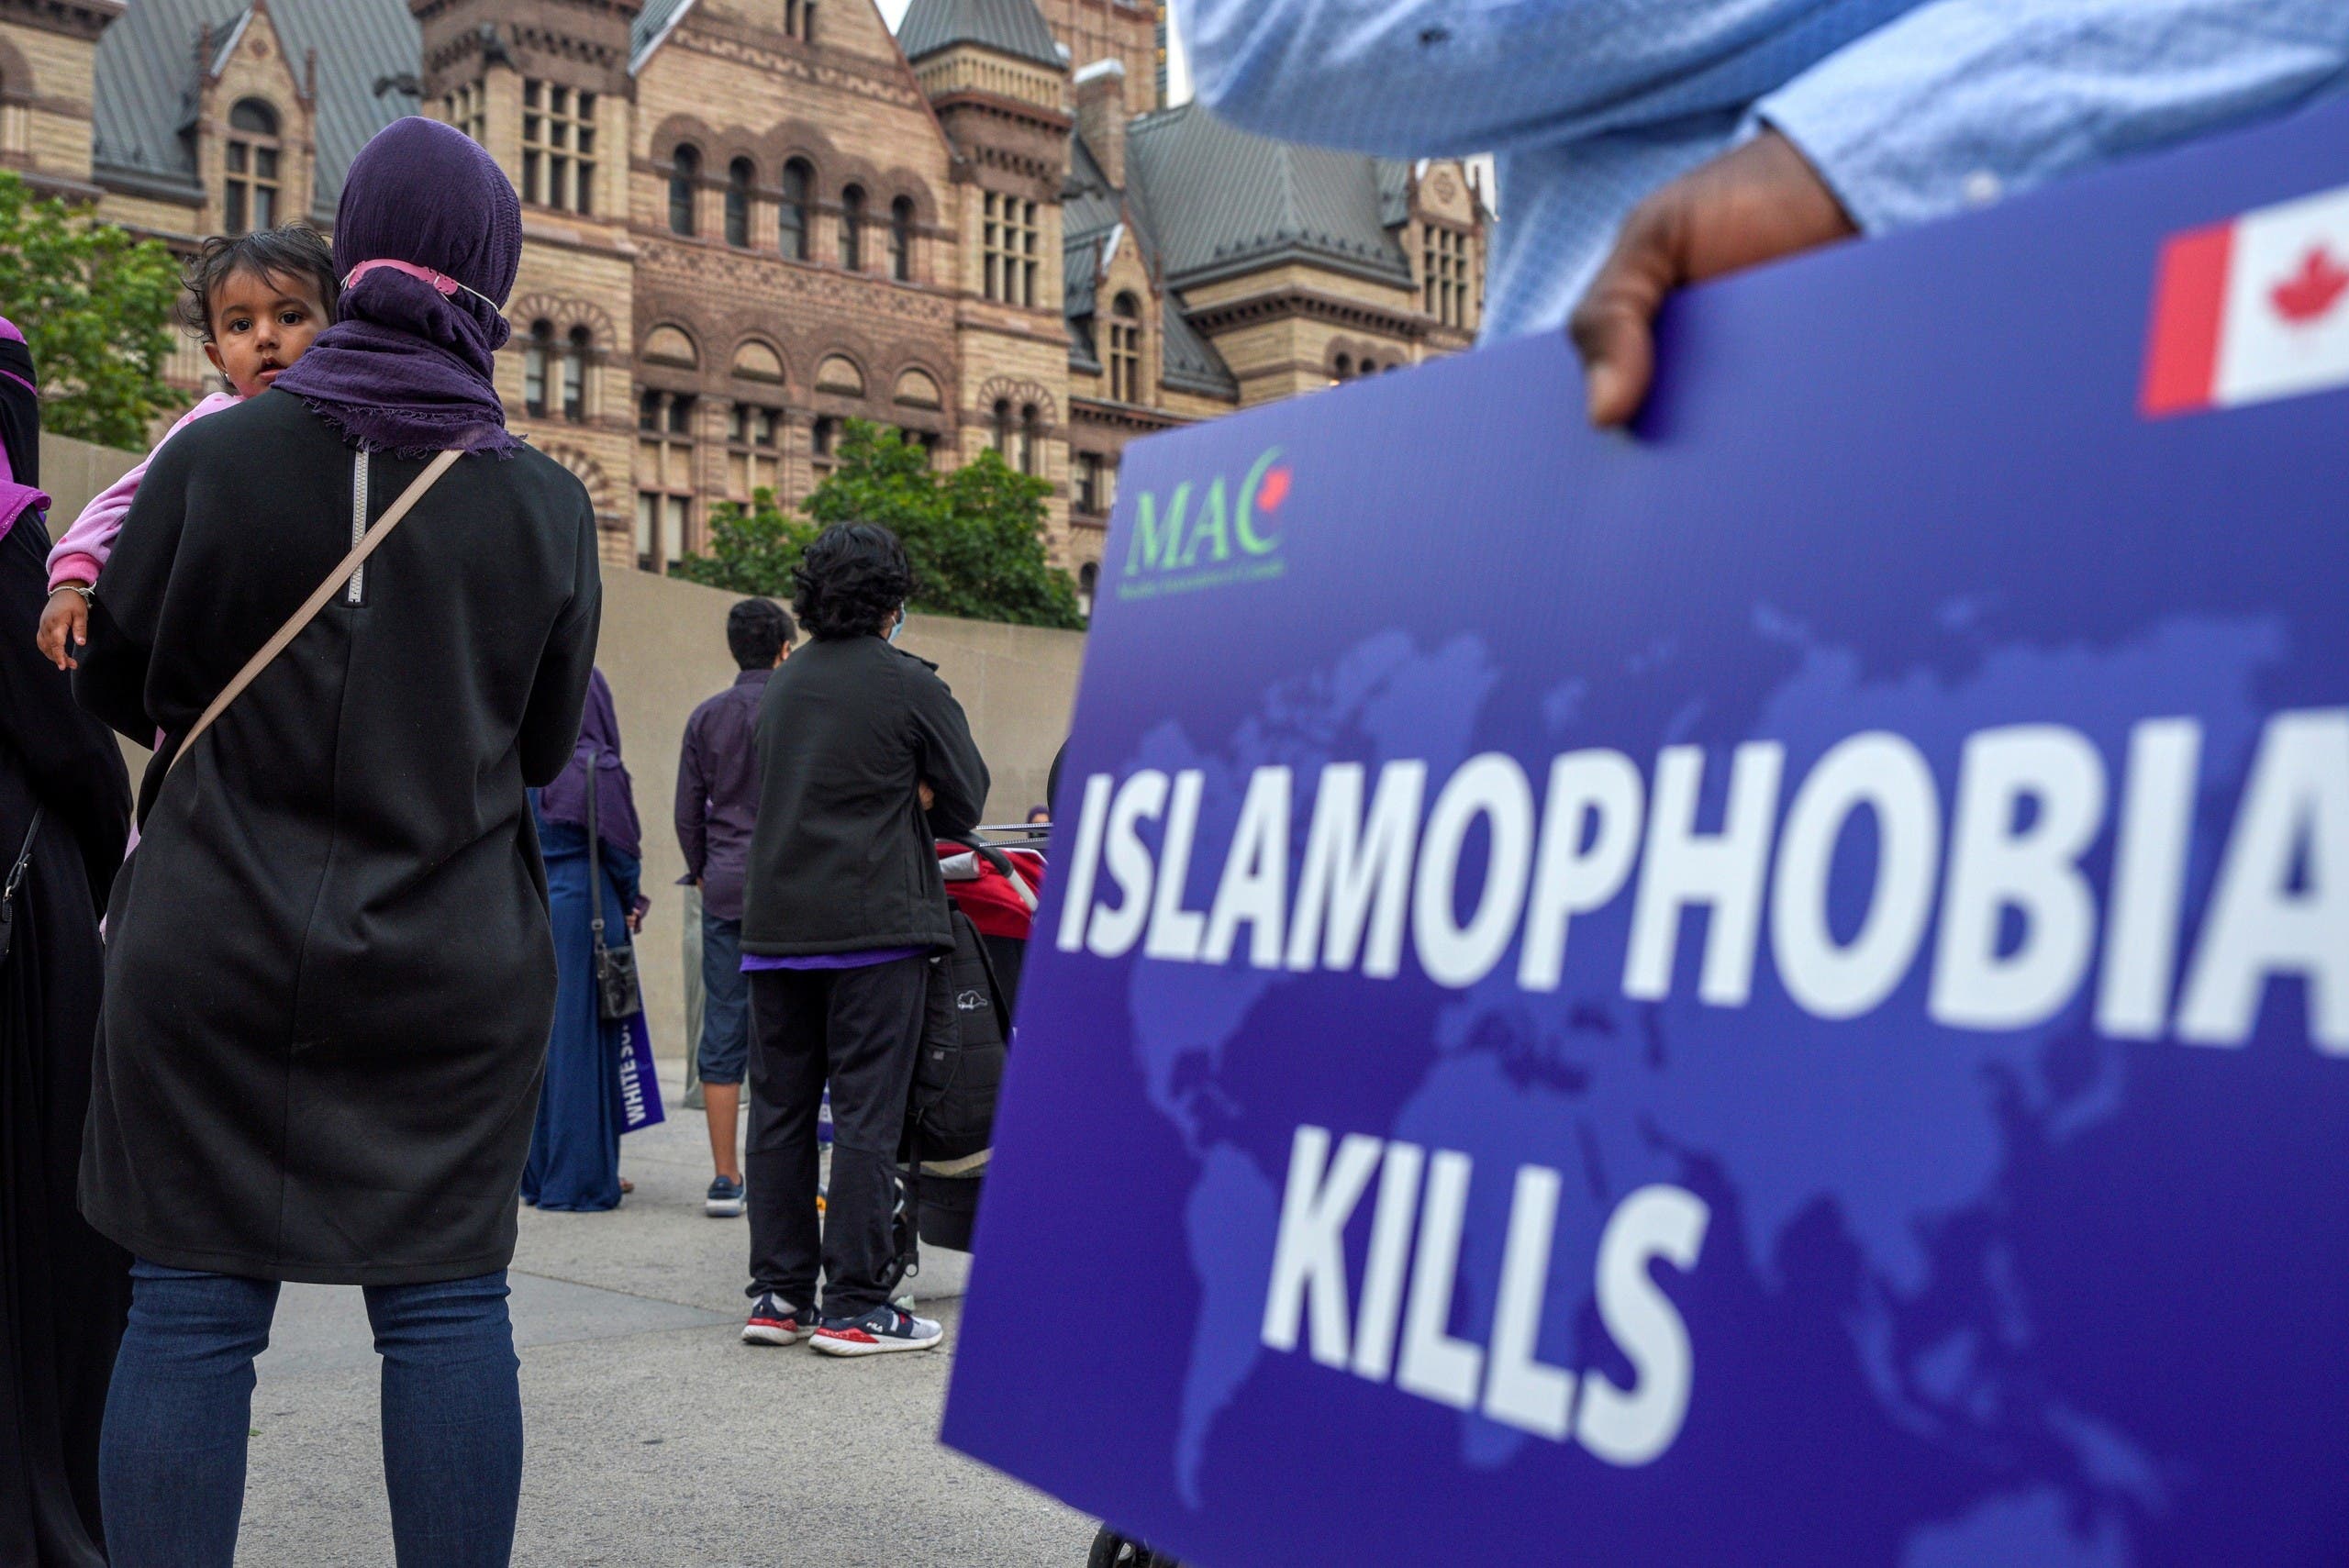 وفقة للاحتجاج على الاسلاموفوبيا في لندن في يونيو الماضي بعد هجوم بشاحنة في كندا استهدف مسلمين وأوقع قتلى